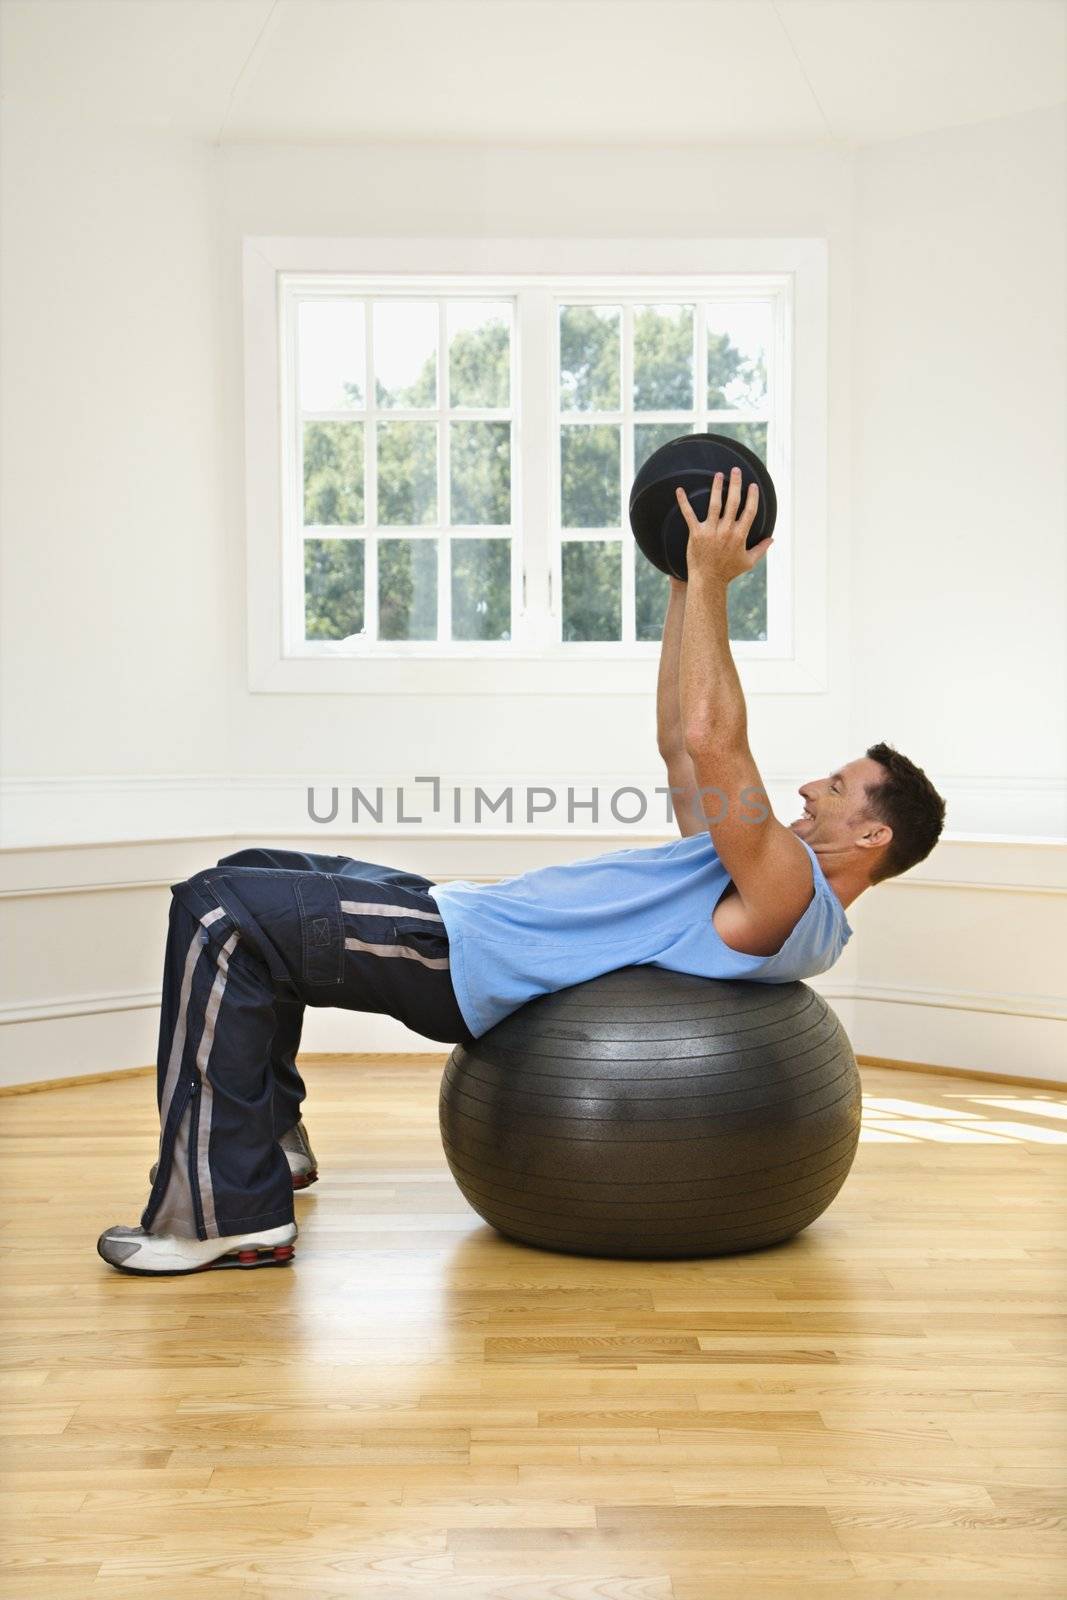 Man lifting medicine ball while on balance ball.